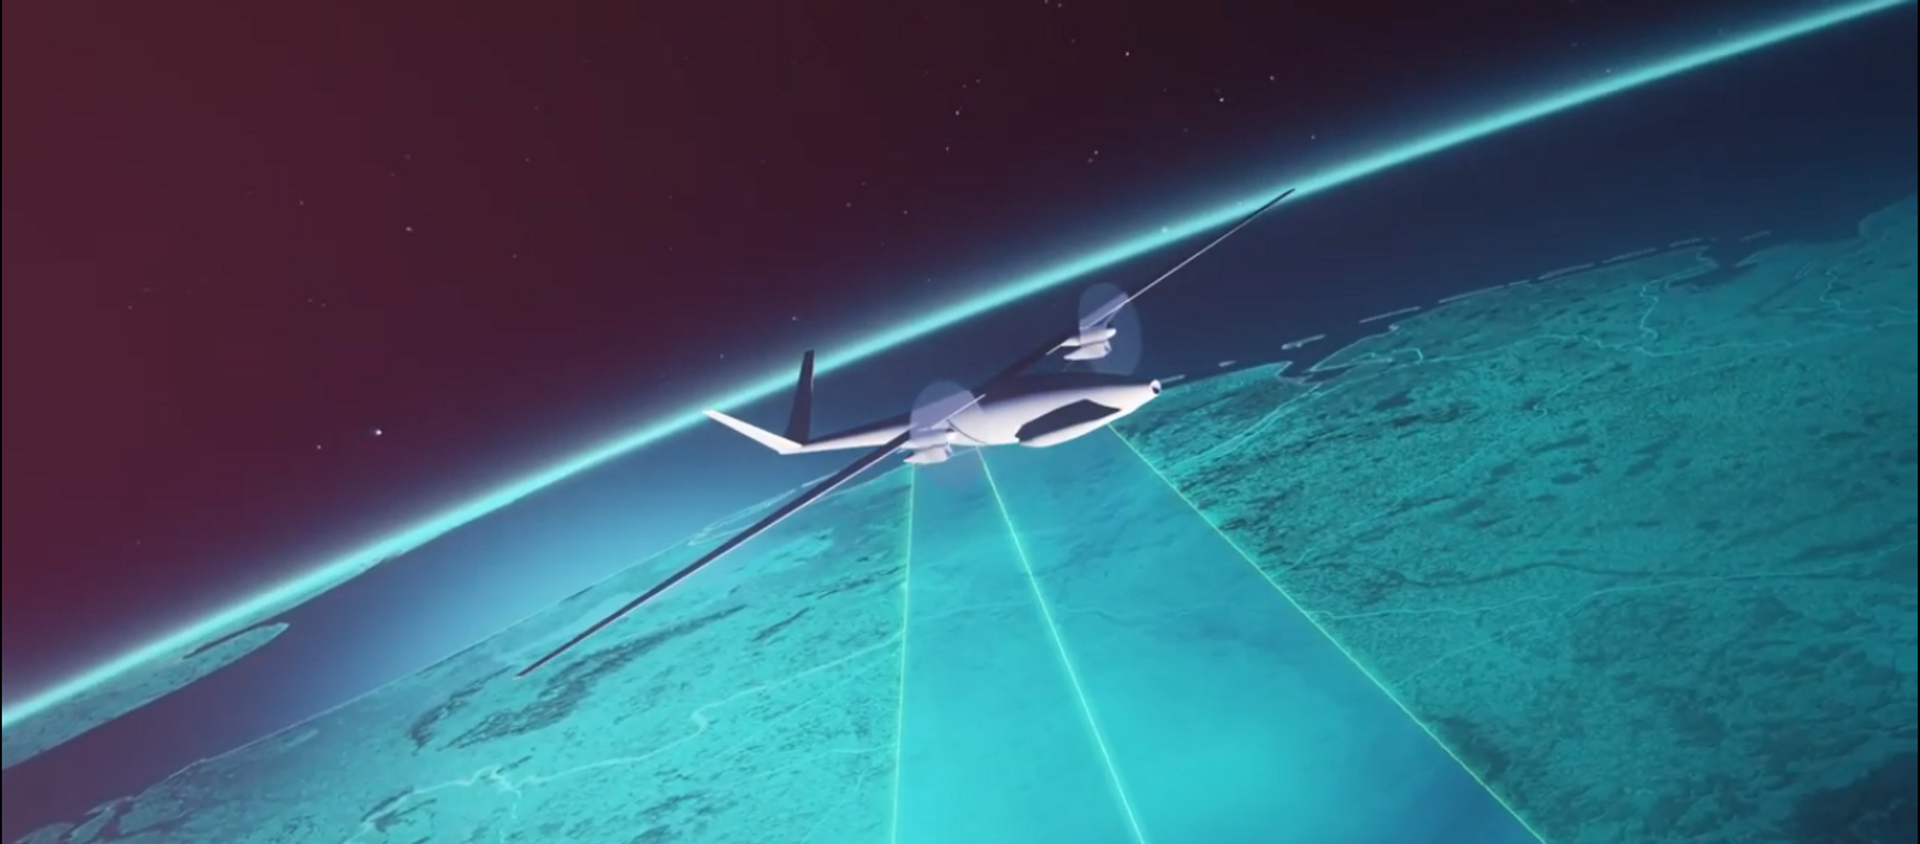 Cambridge Consultants rendered footage of a future High Altitude Platform System (HAPS) for delivering 5G internet - Sputnik International, 1920, 16.12.2020